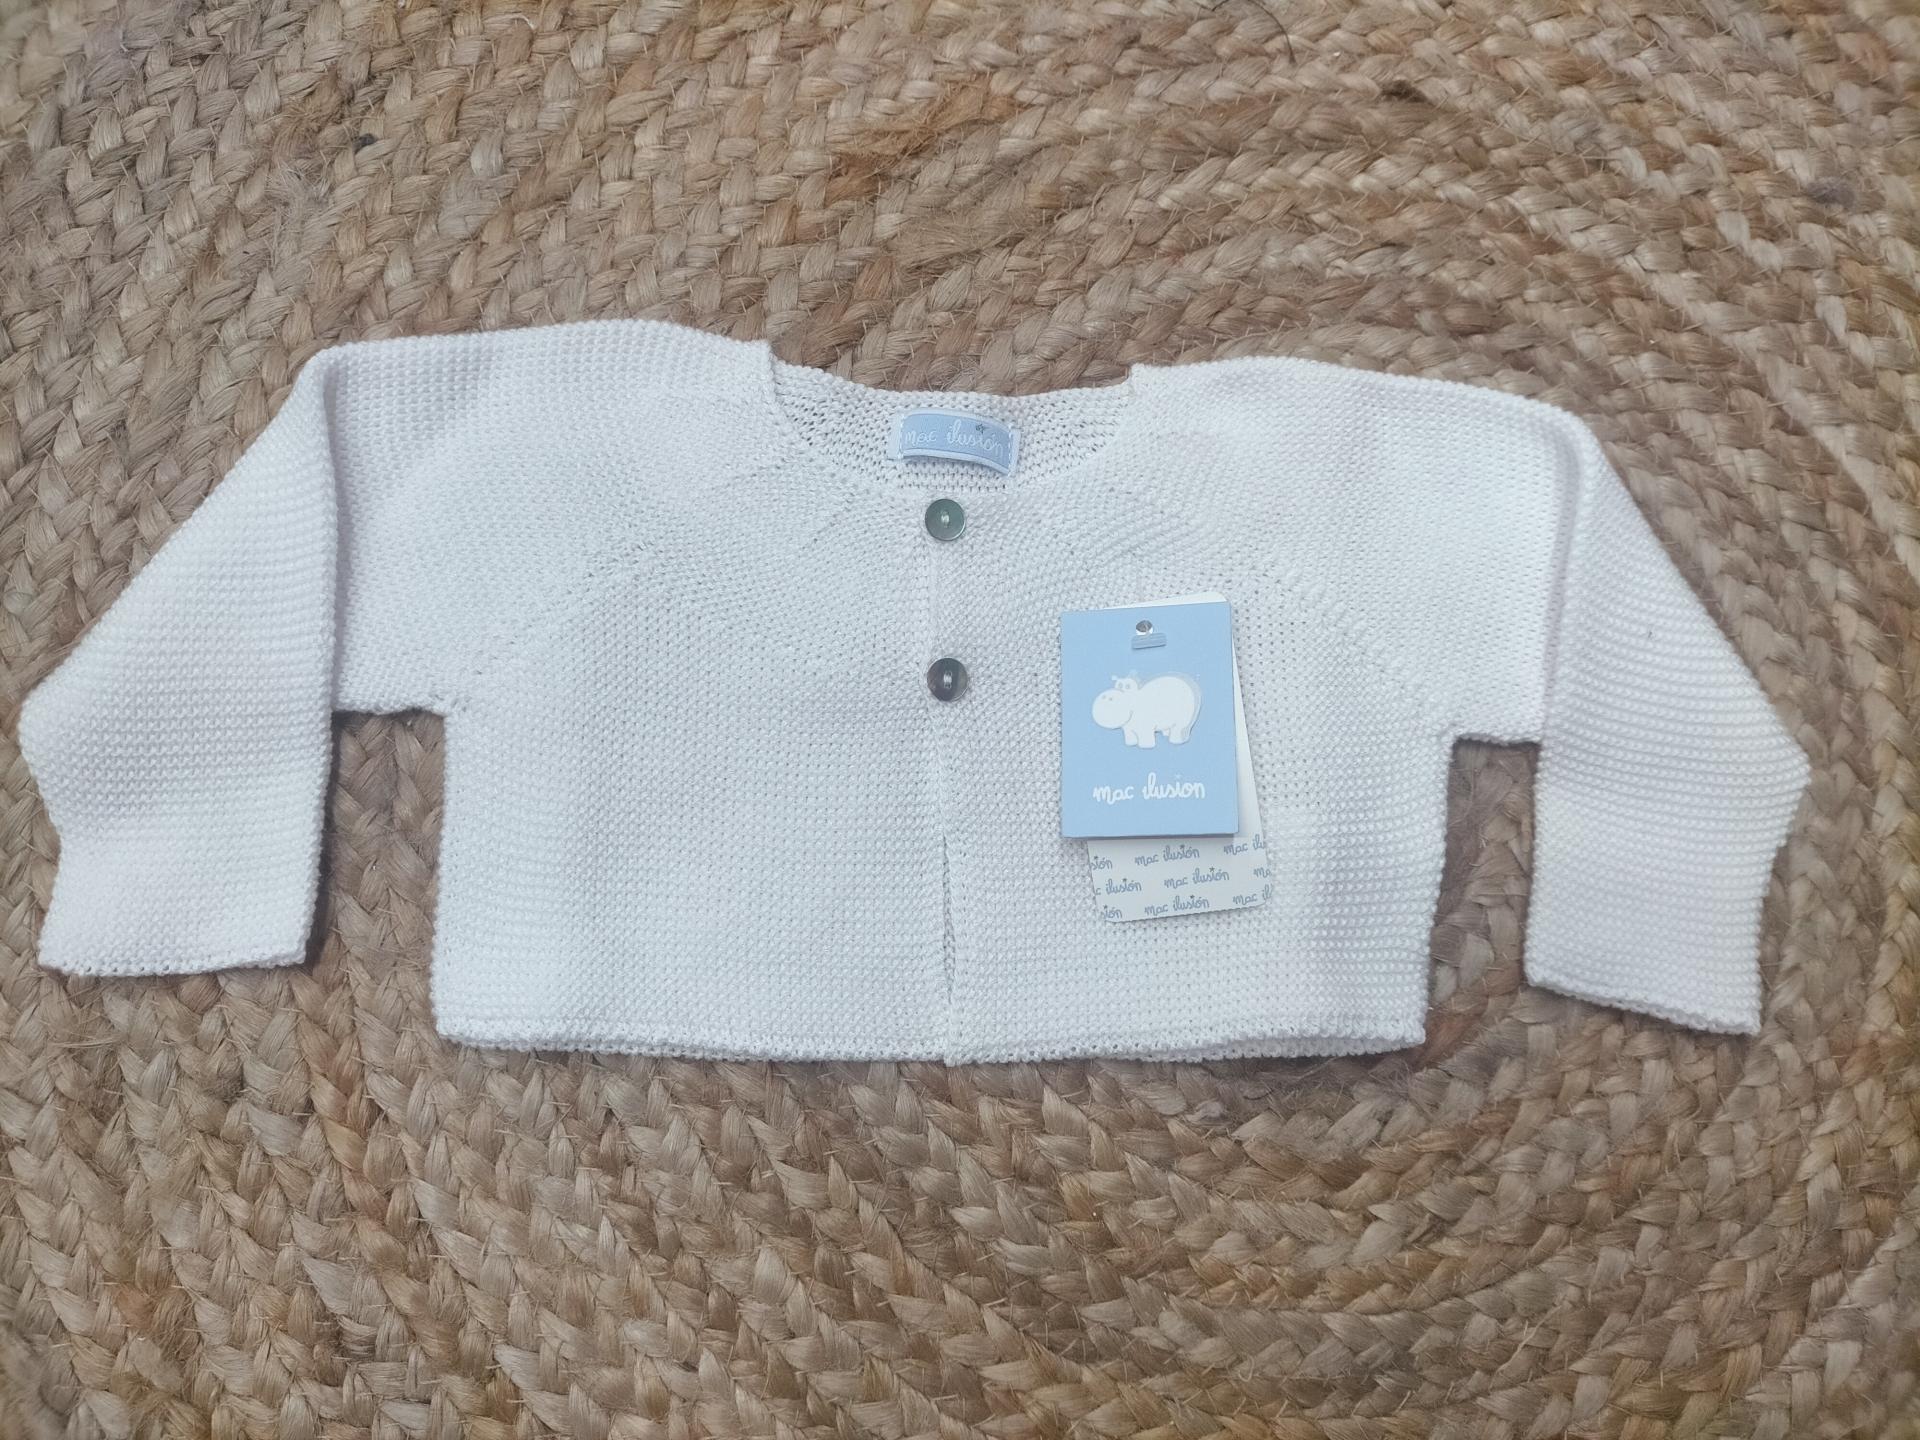 Chaqueta de bebé unisex blanca de Mac Ilusión.